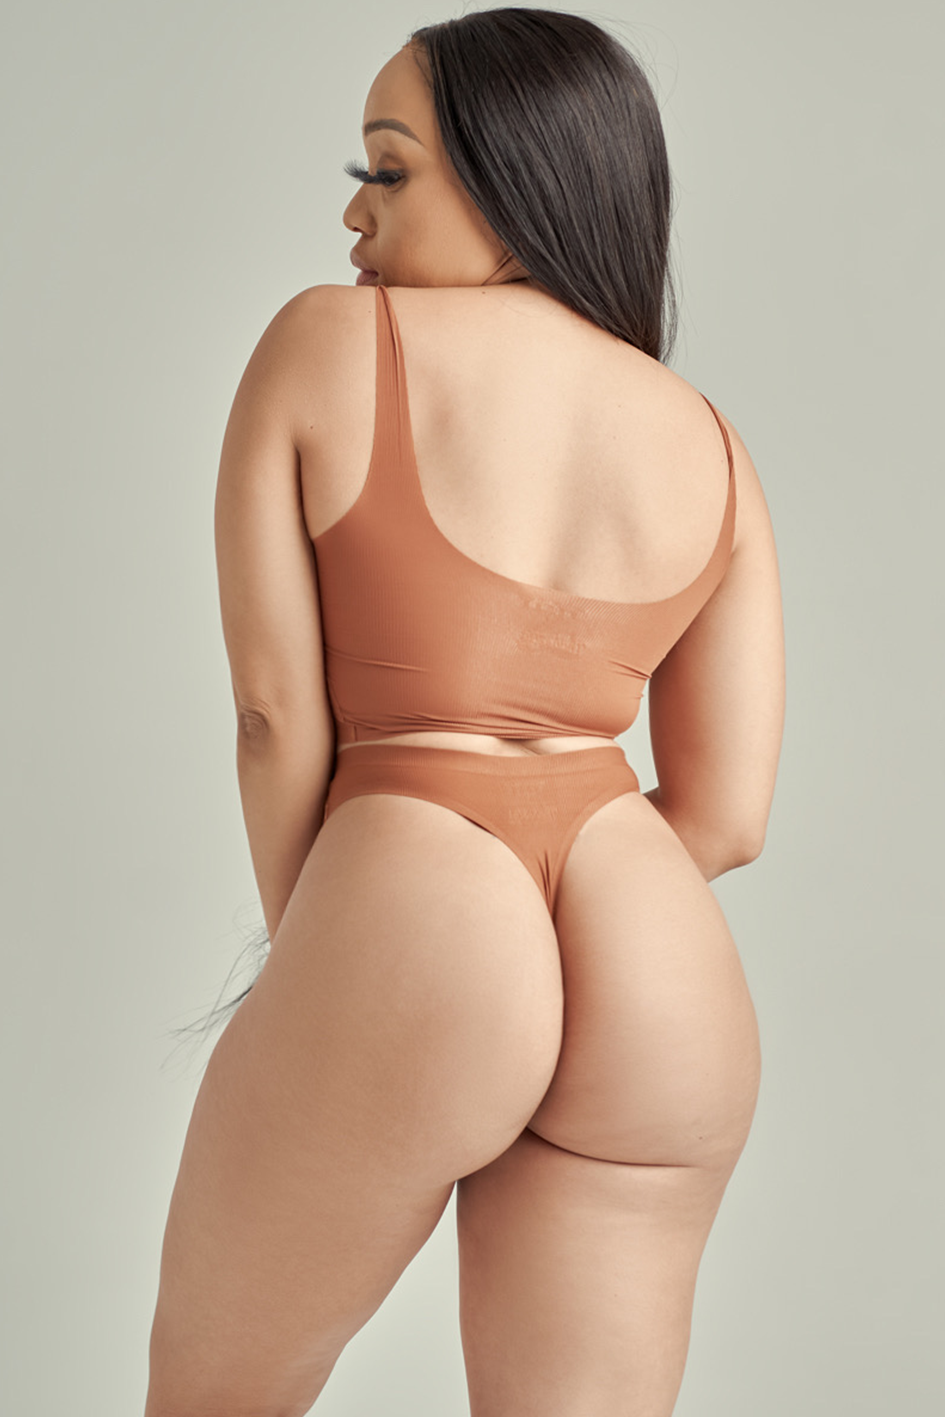 Sihle Ndaba Naked Pic - underwear â€“ Thabootys Underwear & Shapewear